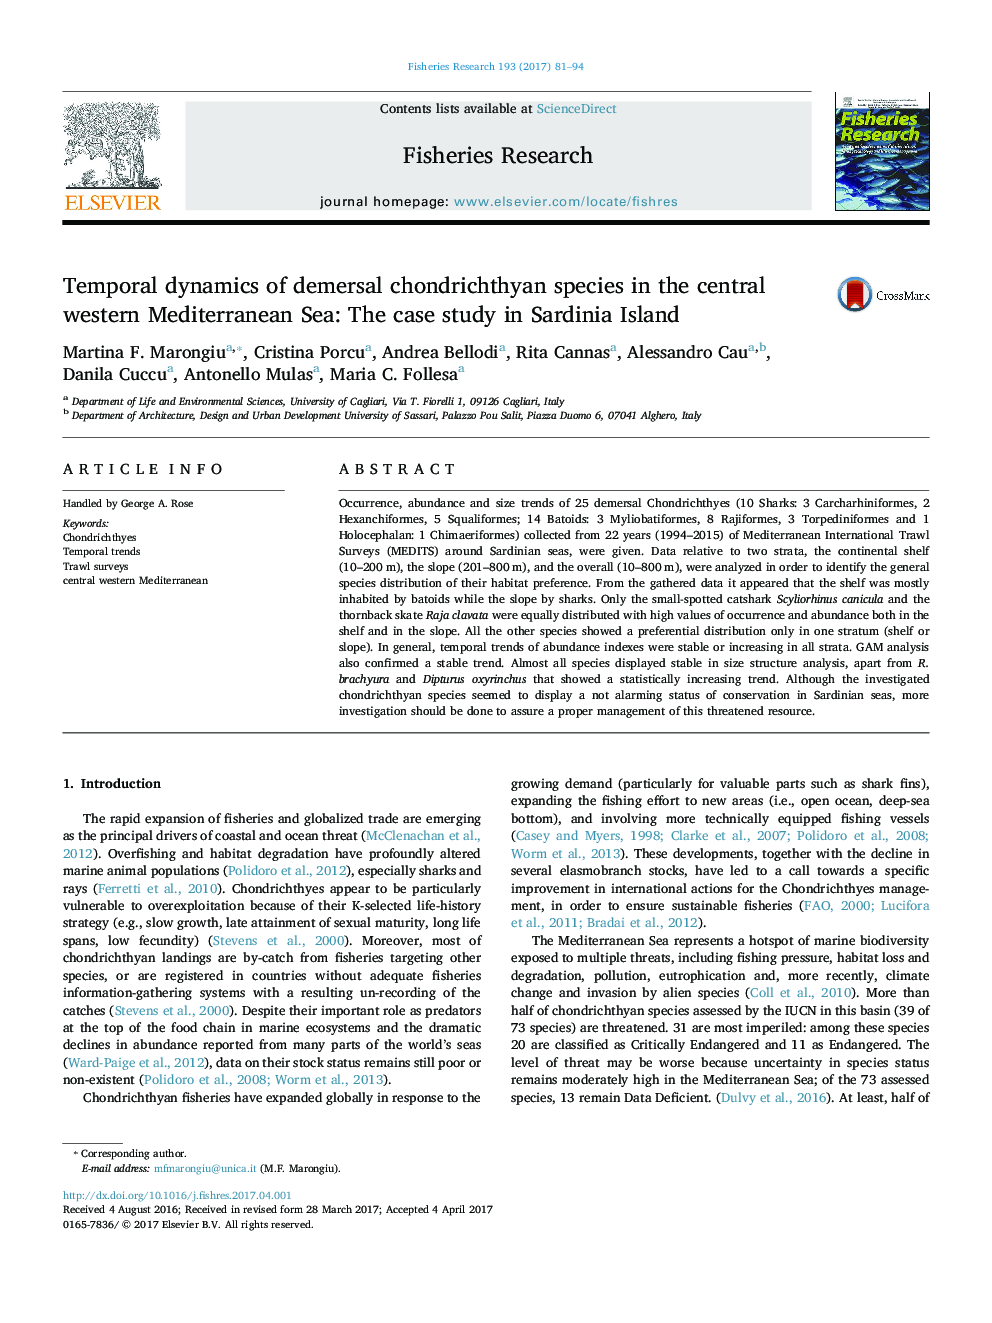 دینامیک زمانیکه گونه های کاندریختی دلفریال در دریای مدیترانه غربی: مطالعه موردی جزیره ساردینیا 